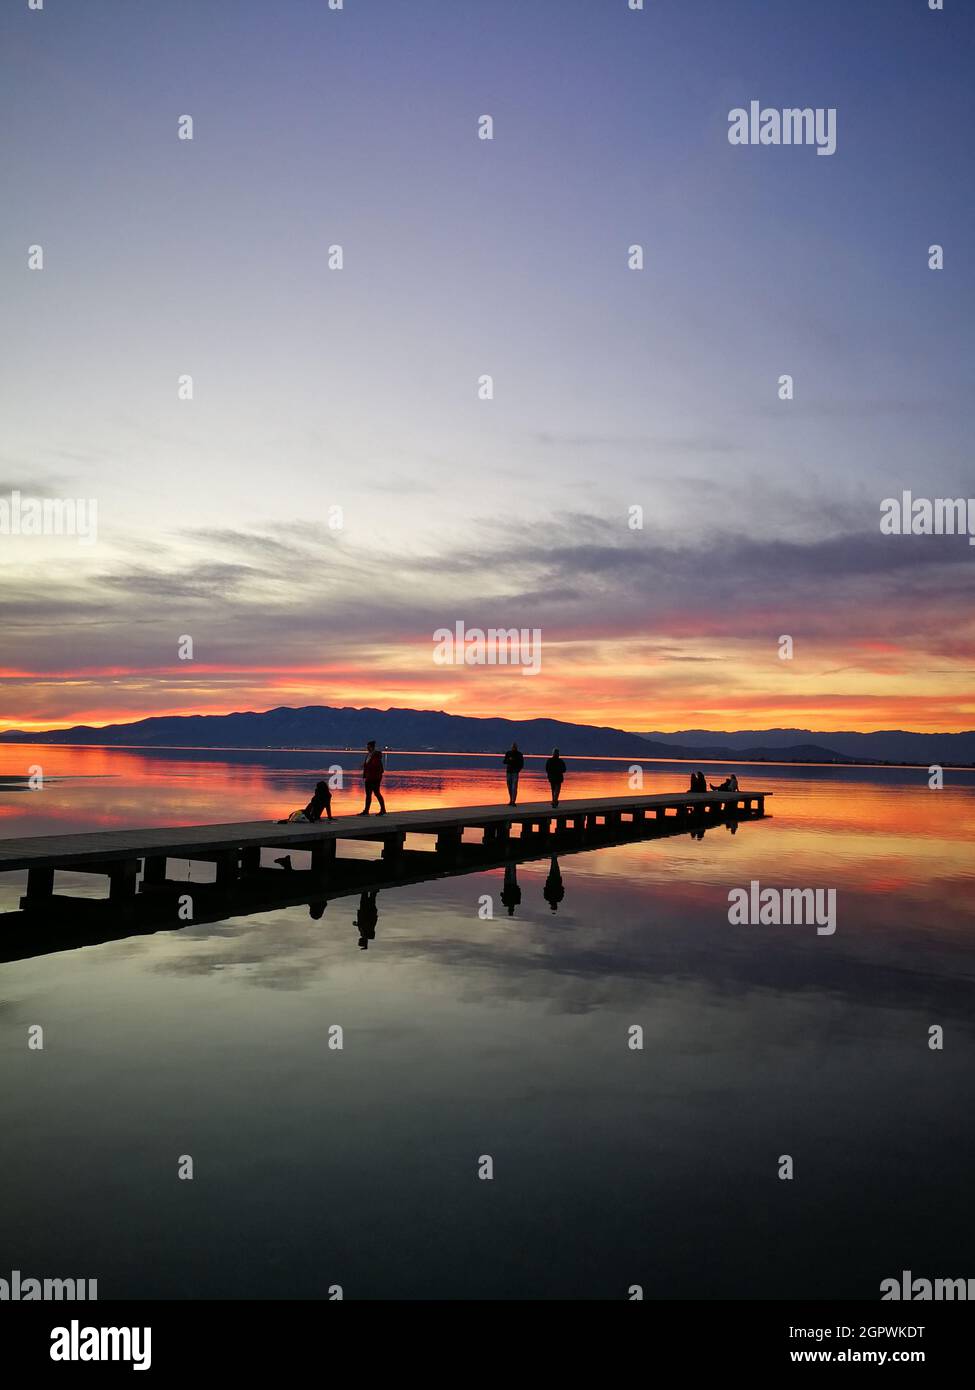 Silueta de personas sobre el lago contra el cielo durante la puesta de sol Foto de stock